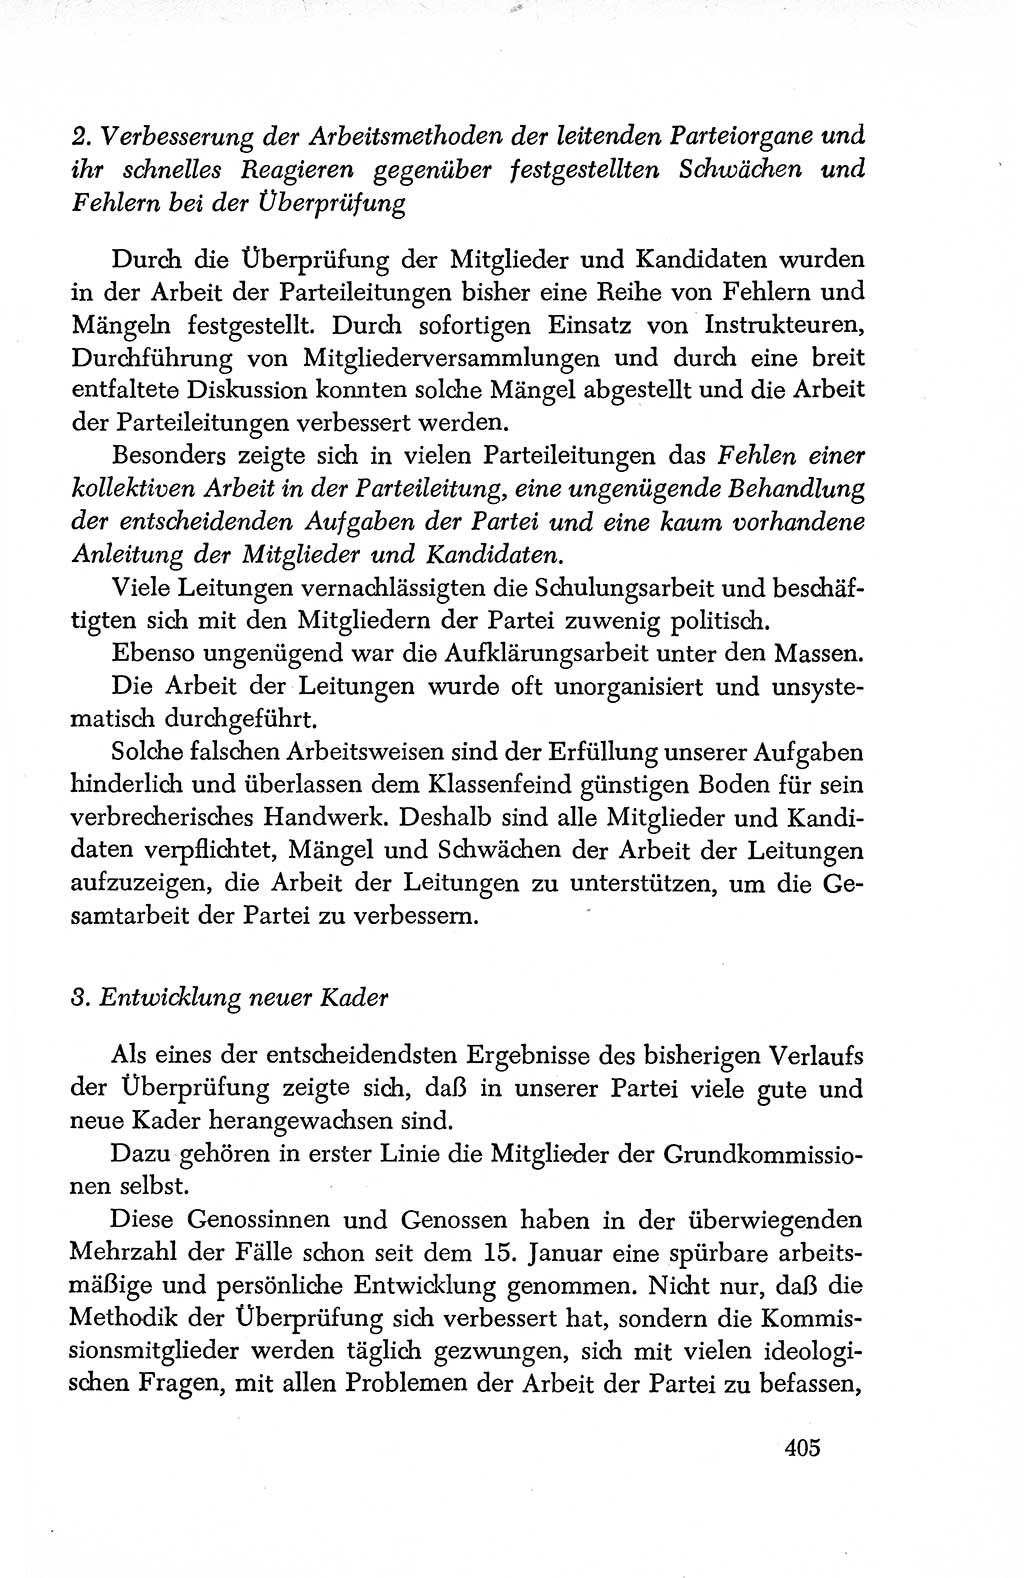 Dokumente der Sozialistischen Einheitspartei Deutschlands (SED) [Deutsche Demokratische Republik (DDR)] 1950-1952, Seite 405 (Dok. SED DDR 1950-1952, S. 405)